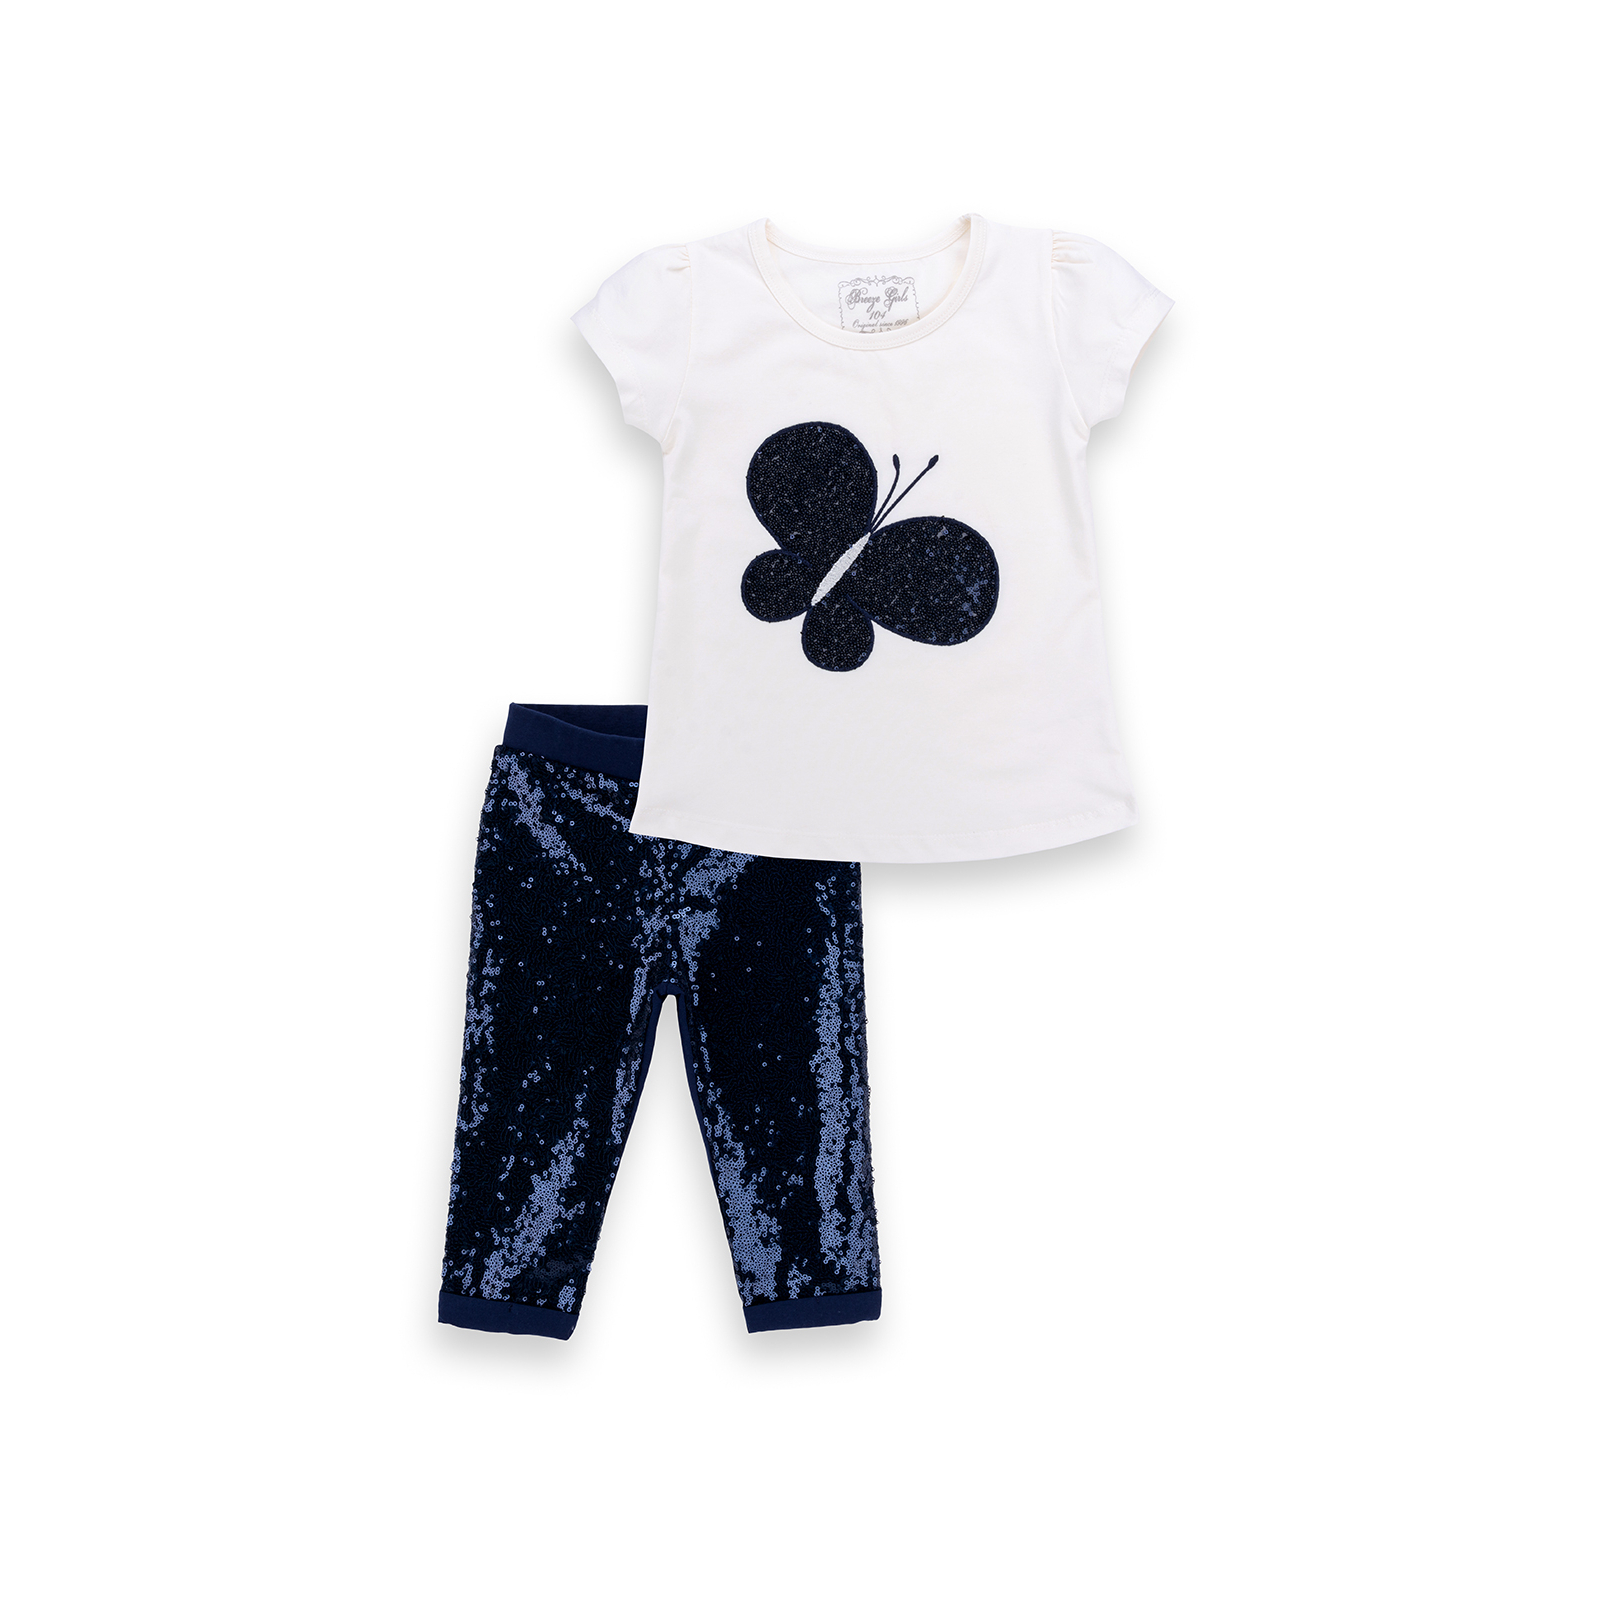 Набор детской одежды Breeze футболка с бабочкой со штанишками (8969-98G-cream)